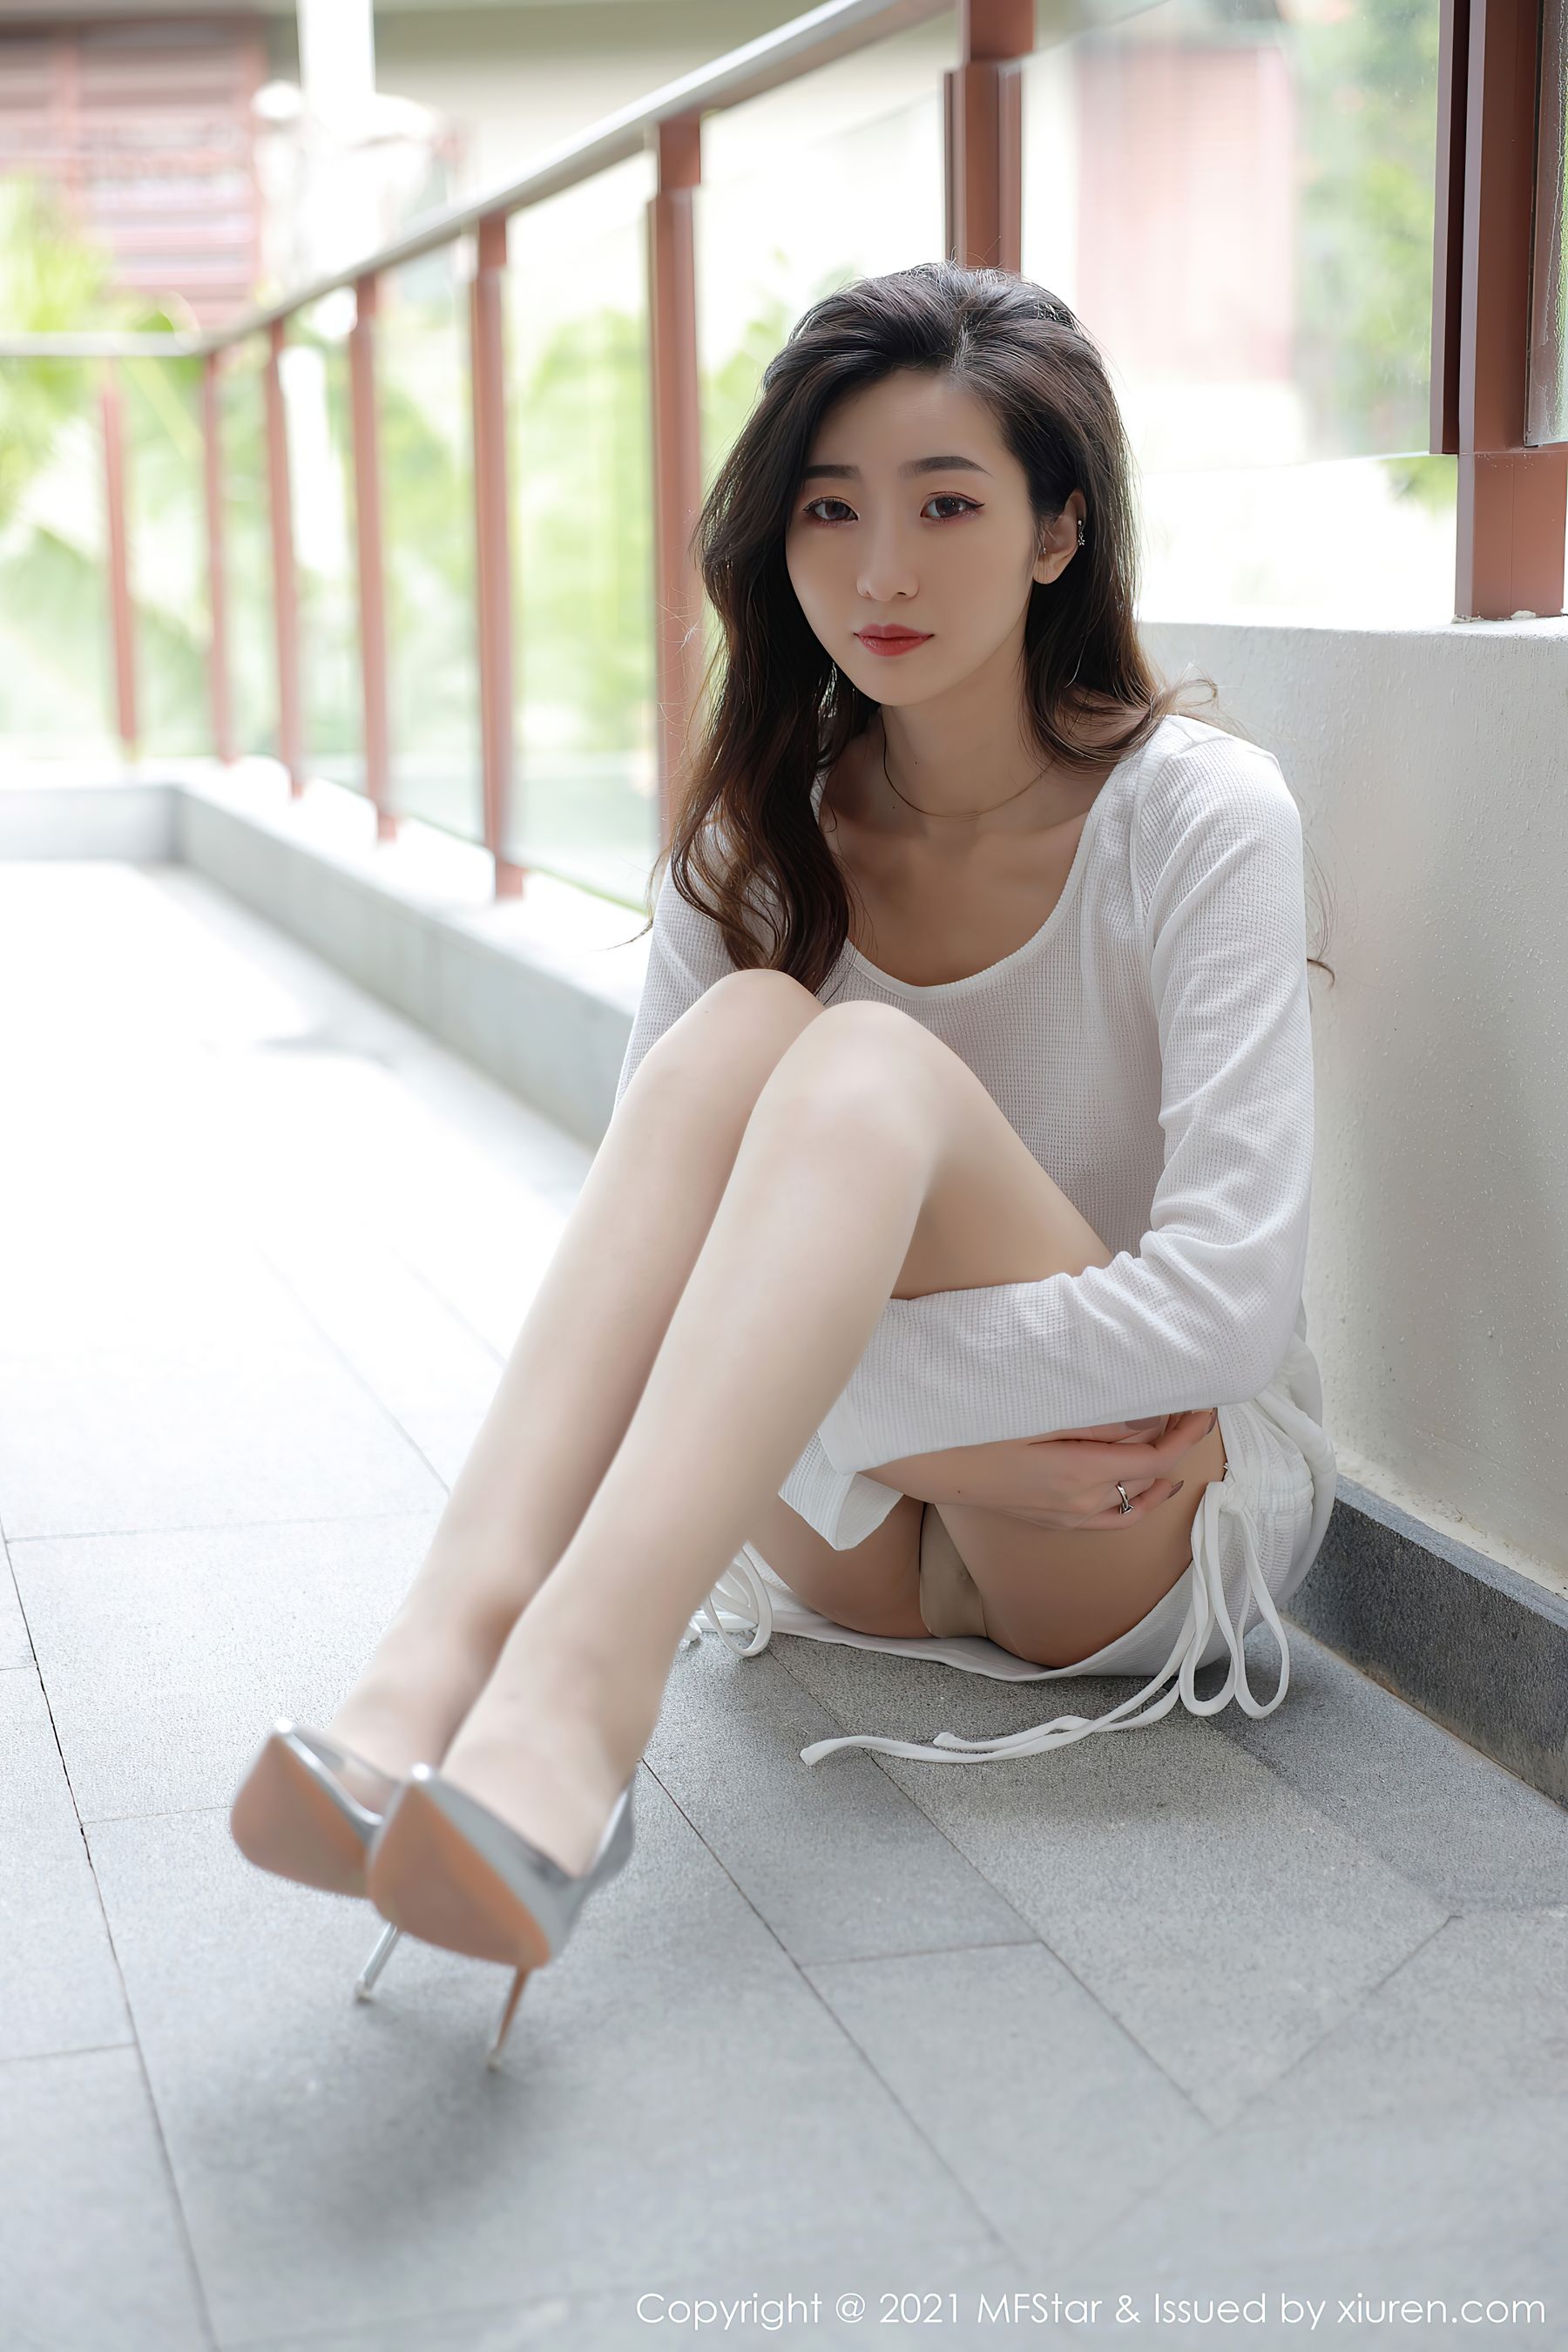 Angie Yee. long legs. girl. 